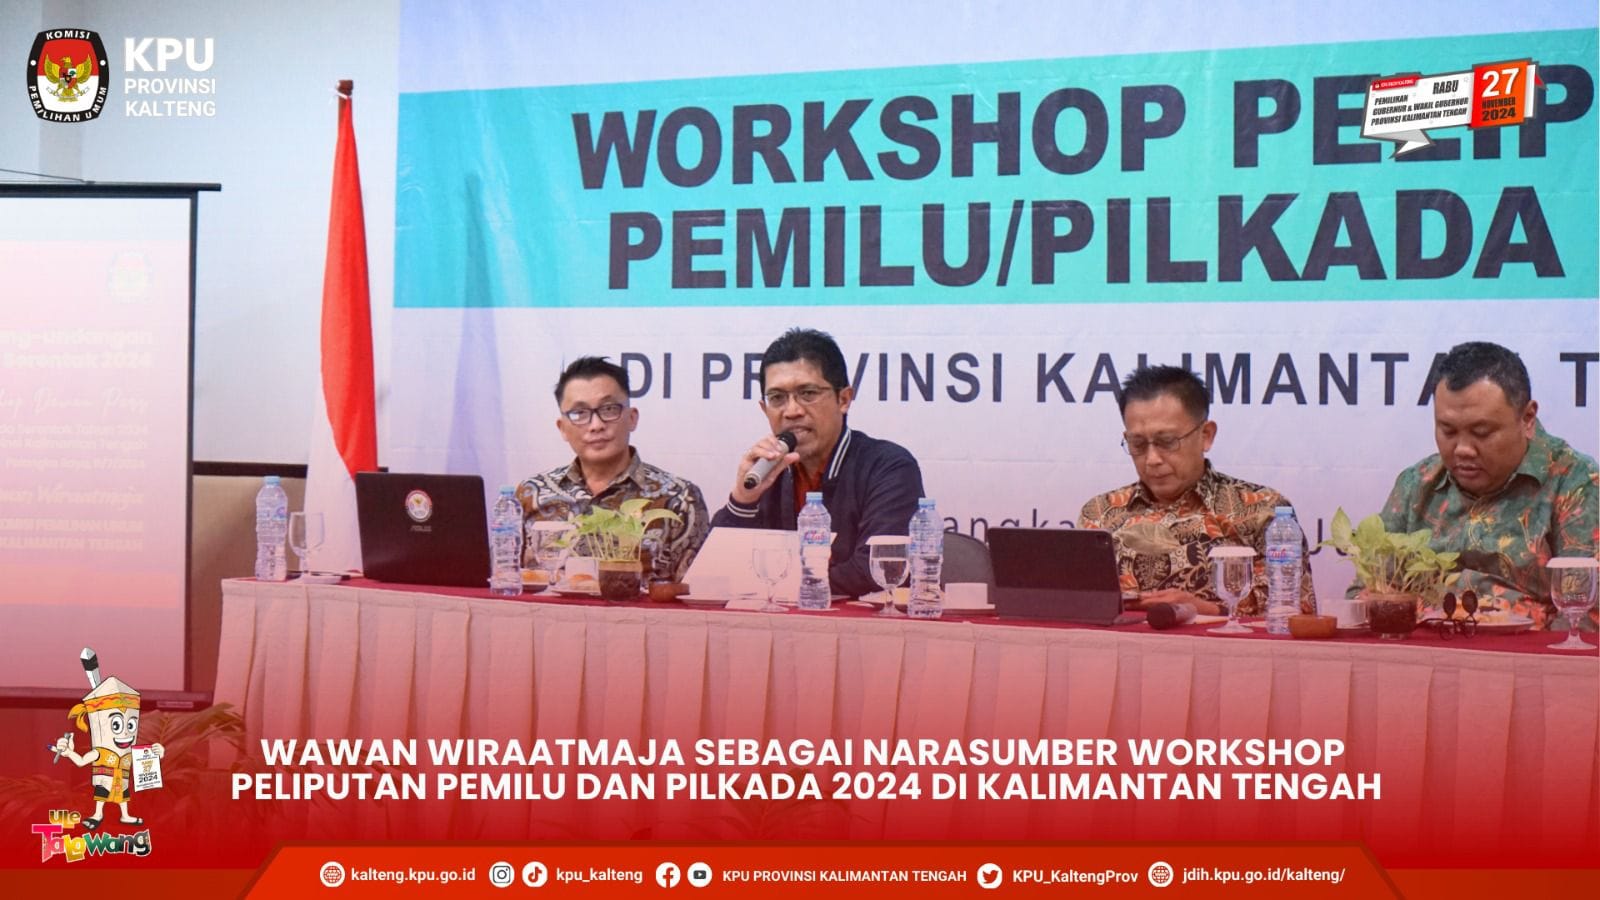 Narasumber Workshop Peliputan Pemilu dan Pilkada 2024 di Kalimantan Tengah